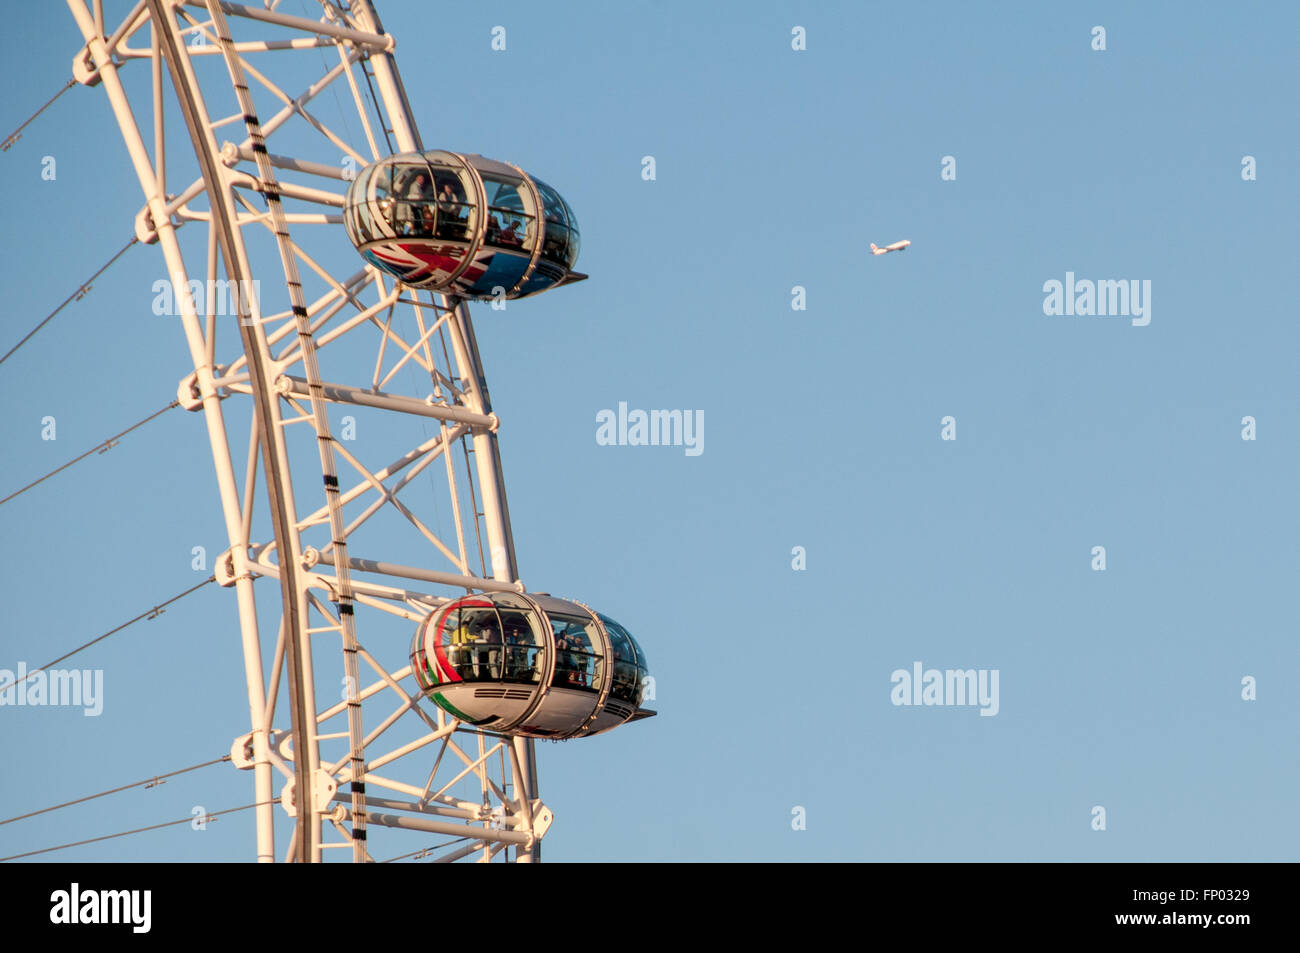 Das London Eye Riesenrad am strahlend blauen Himmel und Flugzeug im Hintergrund, London UK. Stockfoto